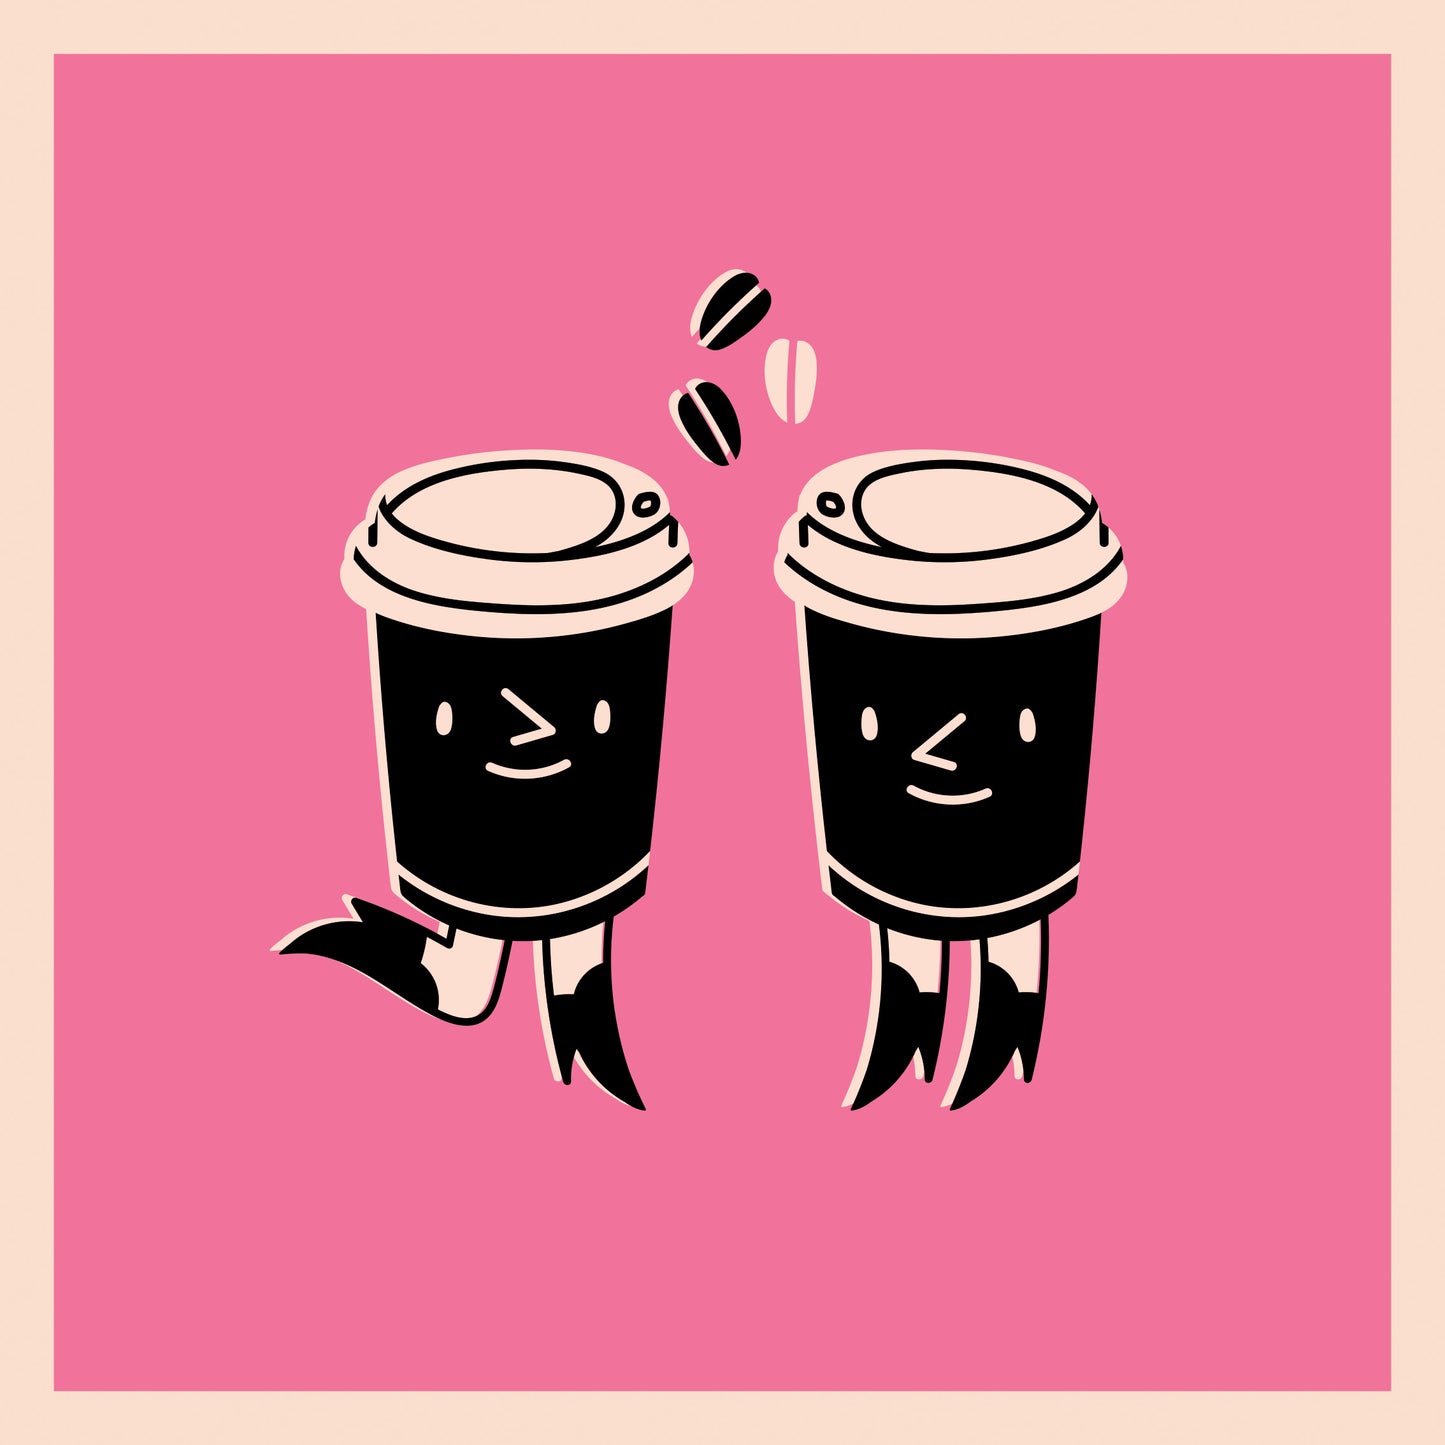 Un tableau coloré rose avec deux tasses à café personnifiées qui se font faces. Elles ont des jambes et un visage qui sourit